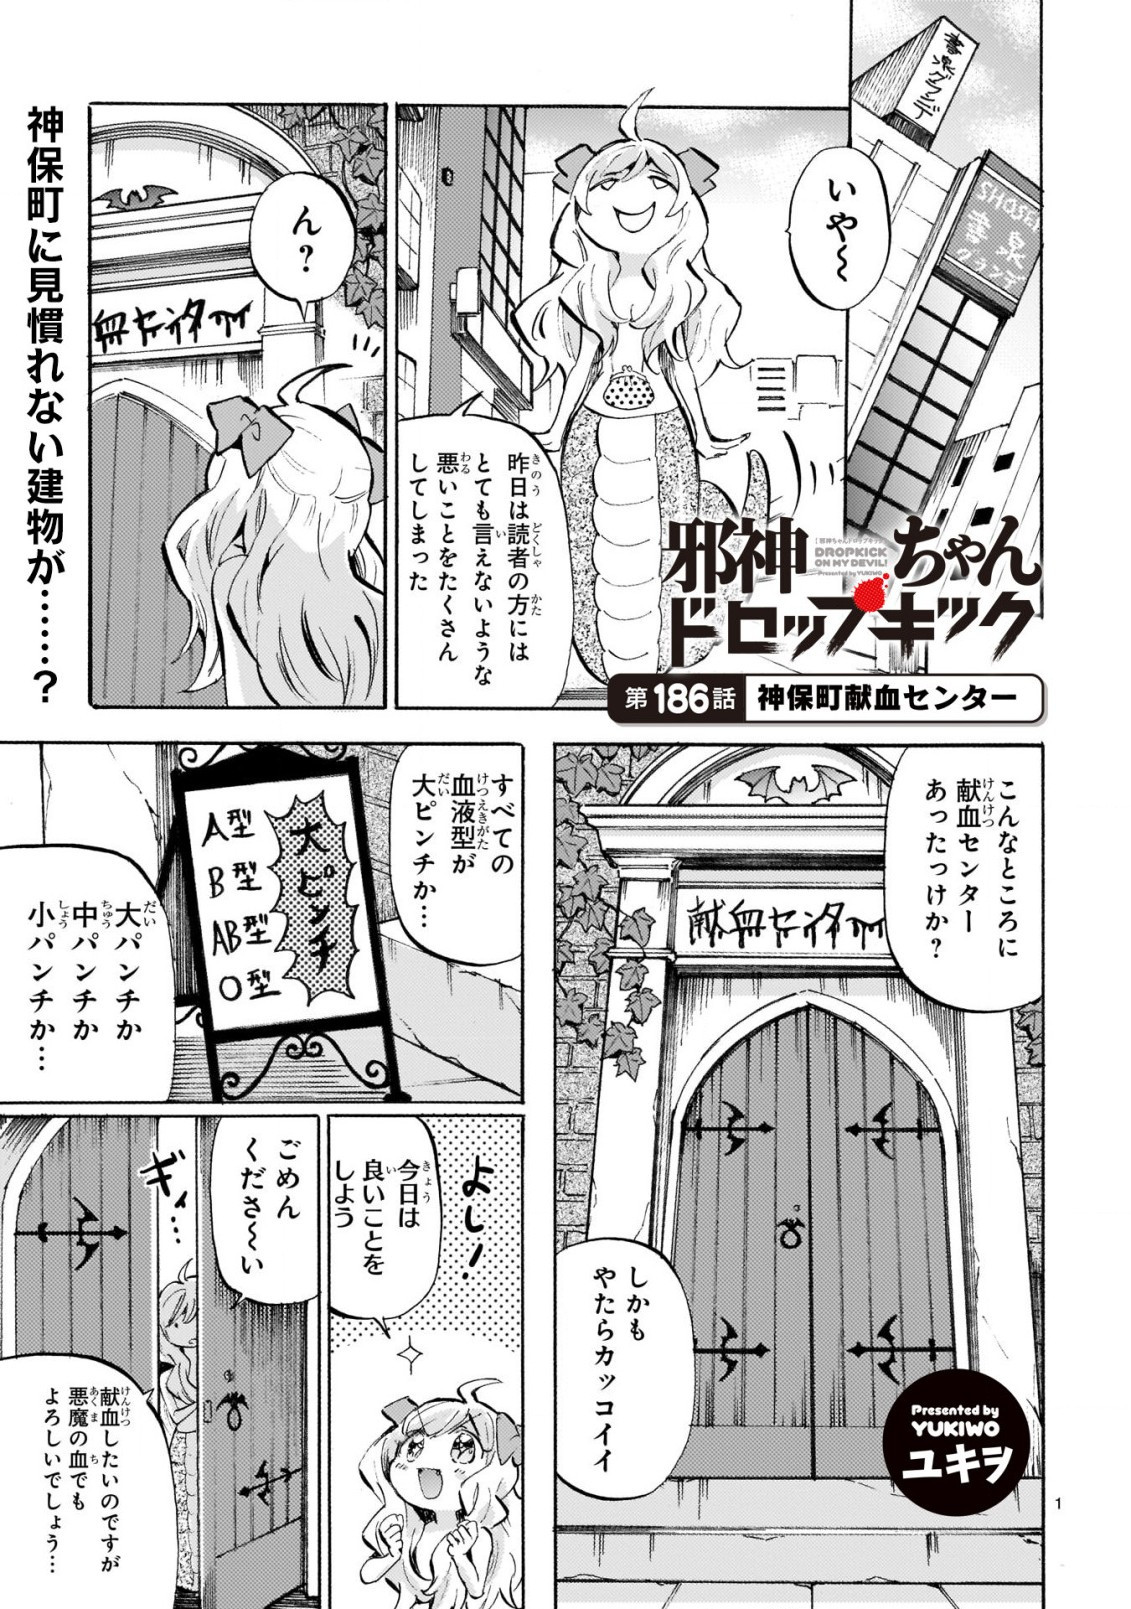 Jashin-chan Dropkick - Chapter 186 - Page 1